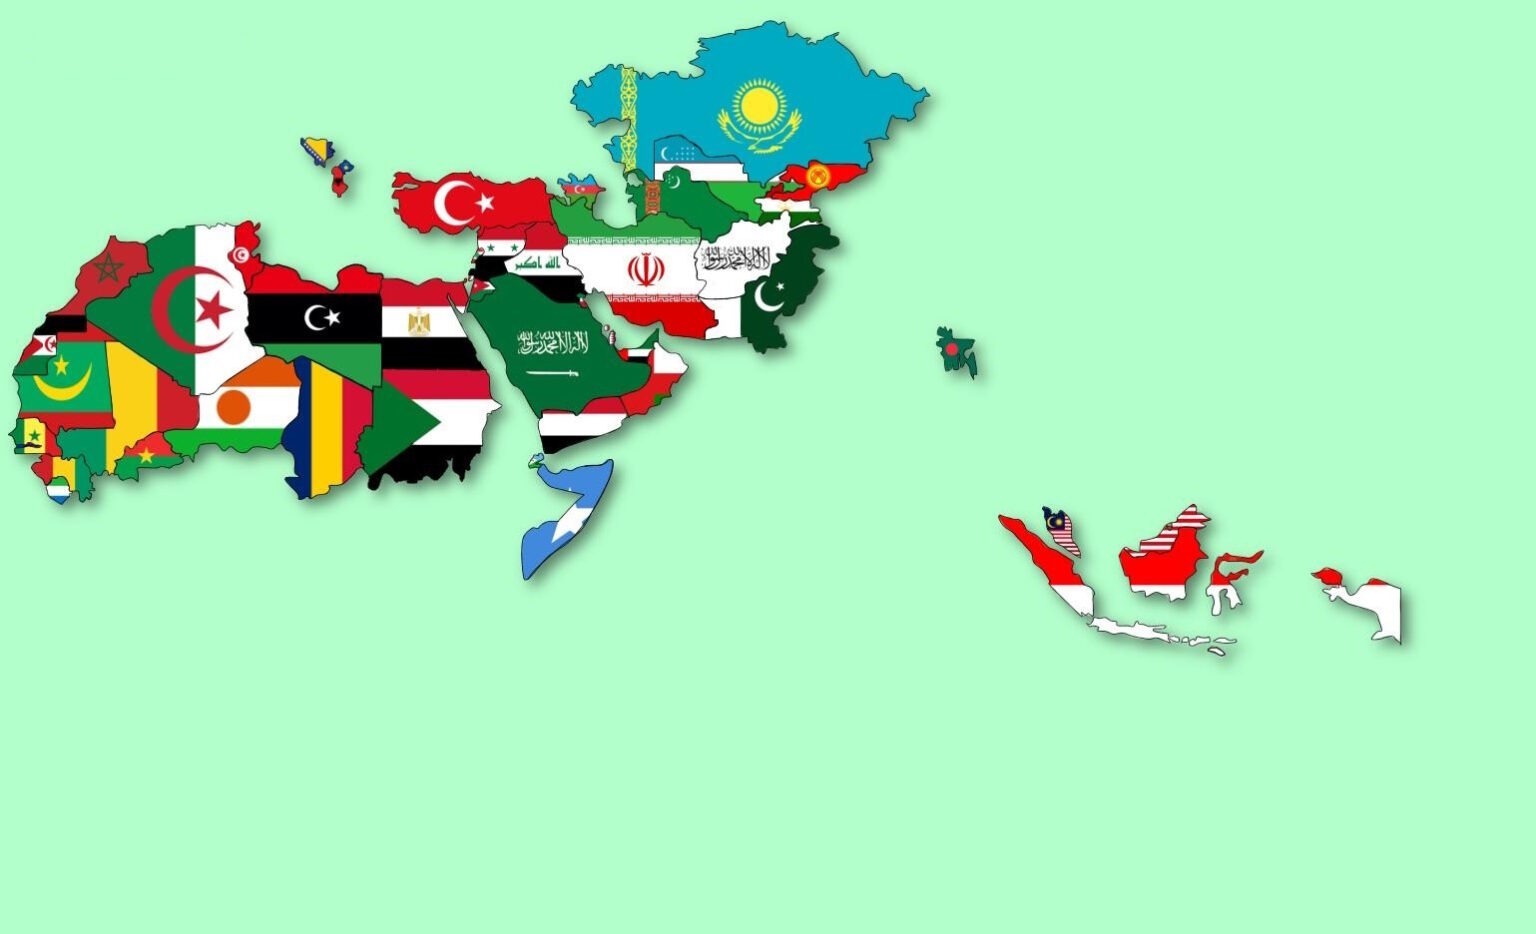 ۱۵ کشور قدرتمند جهان اسلام بر اساس مولفه های نظامی و اقتصادی